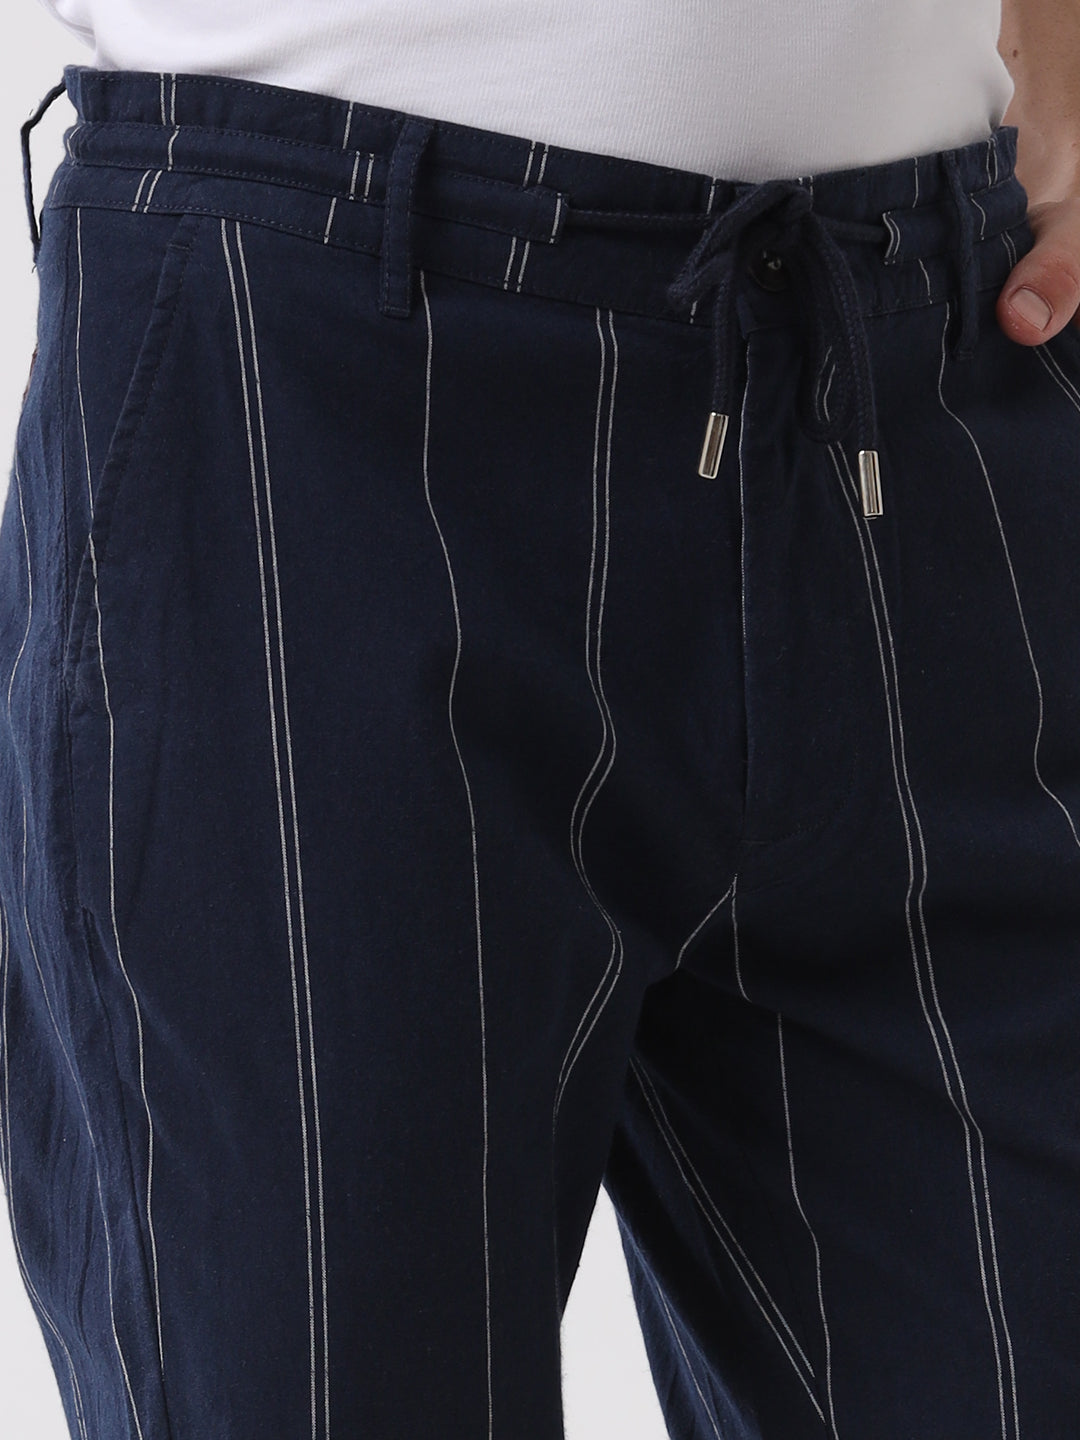 Striper Navy Drawstring Trouser